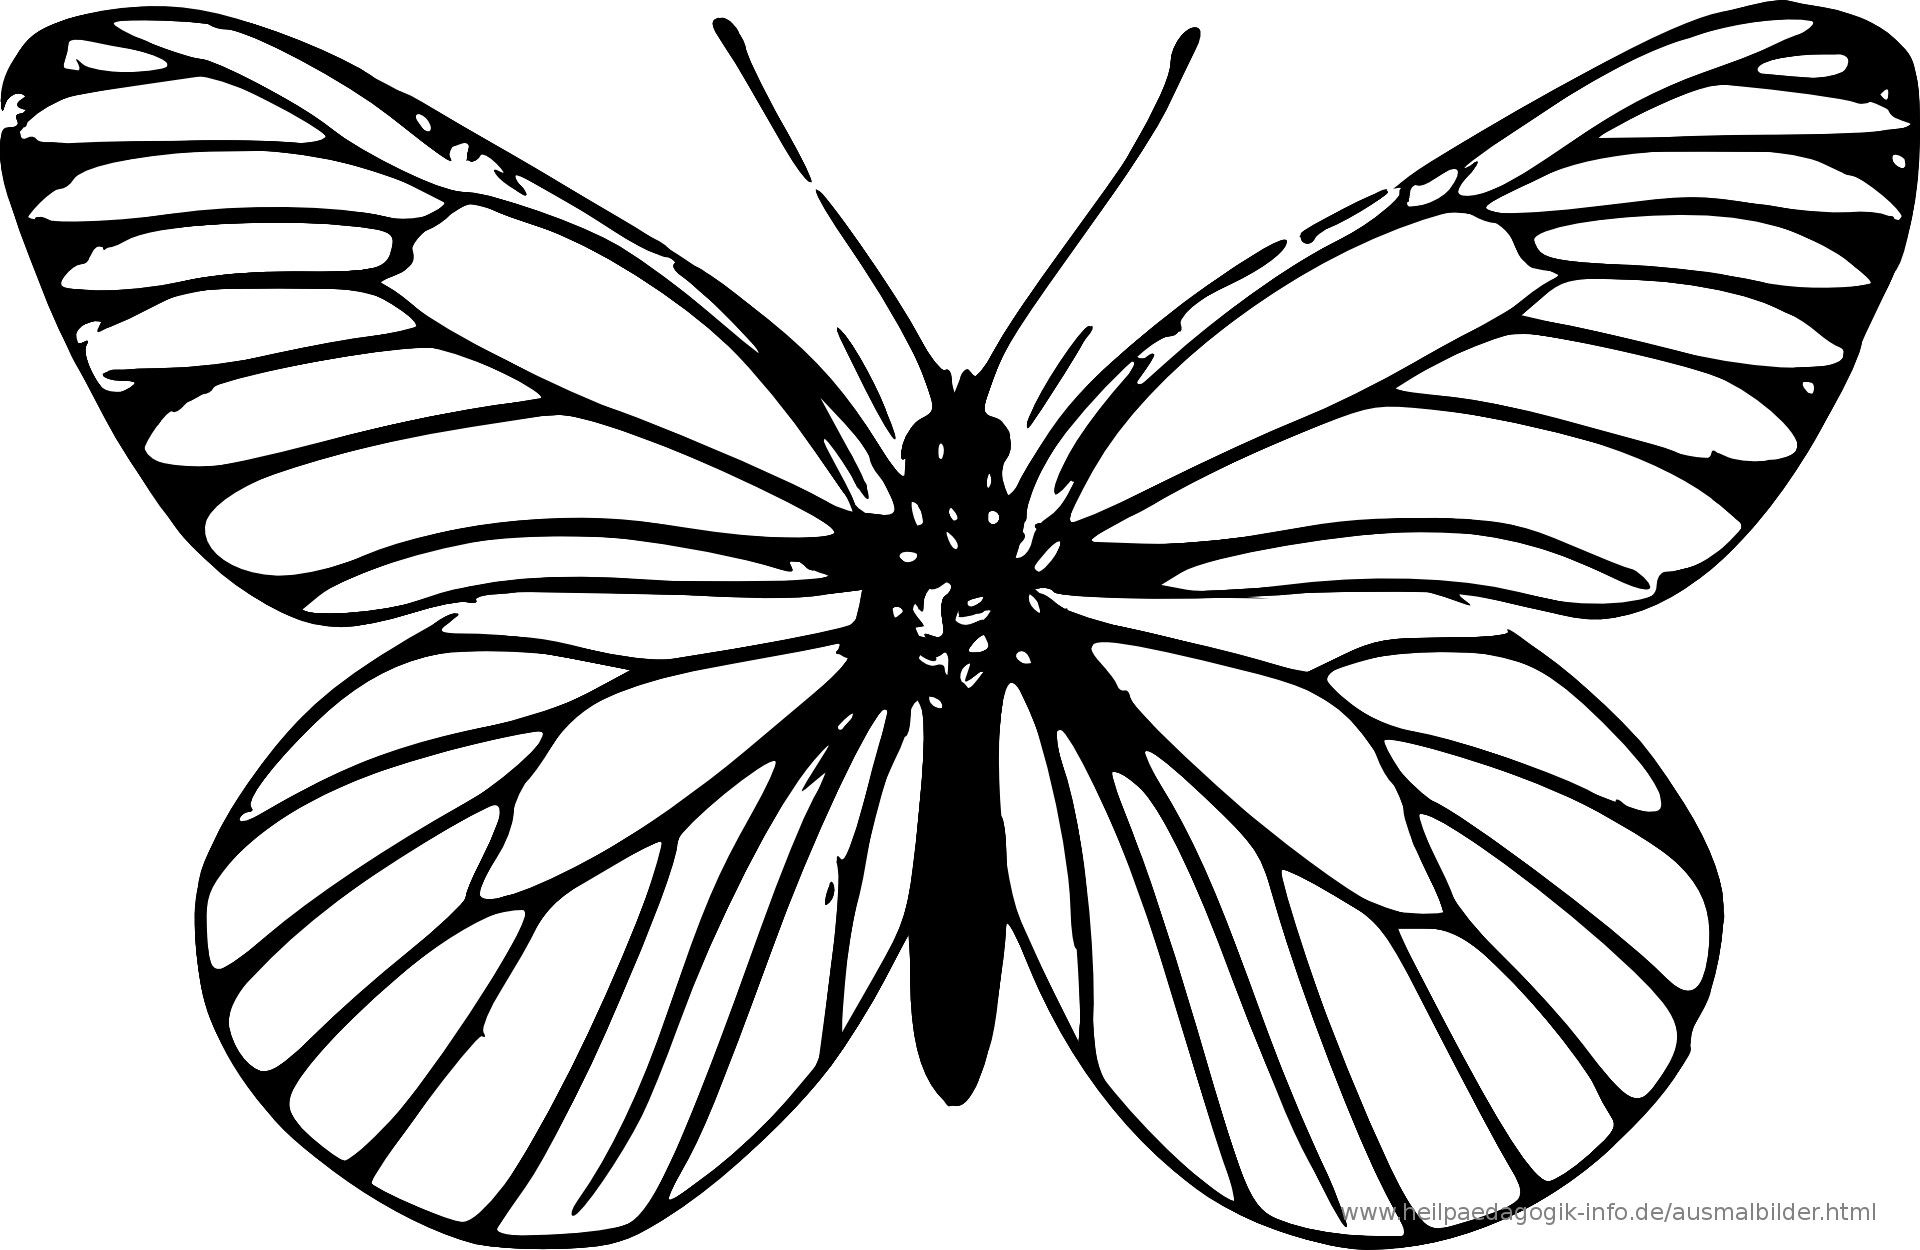 Die Besten Von Ausmalbilder Schmetterling Kostenlos ganzes Malvorlage Schmetterling Kostenlos